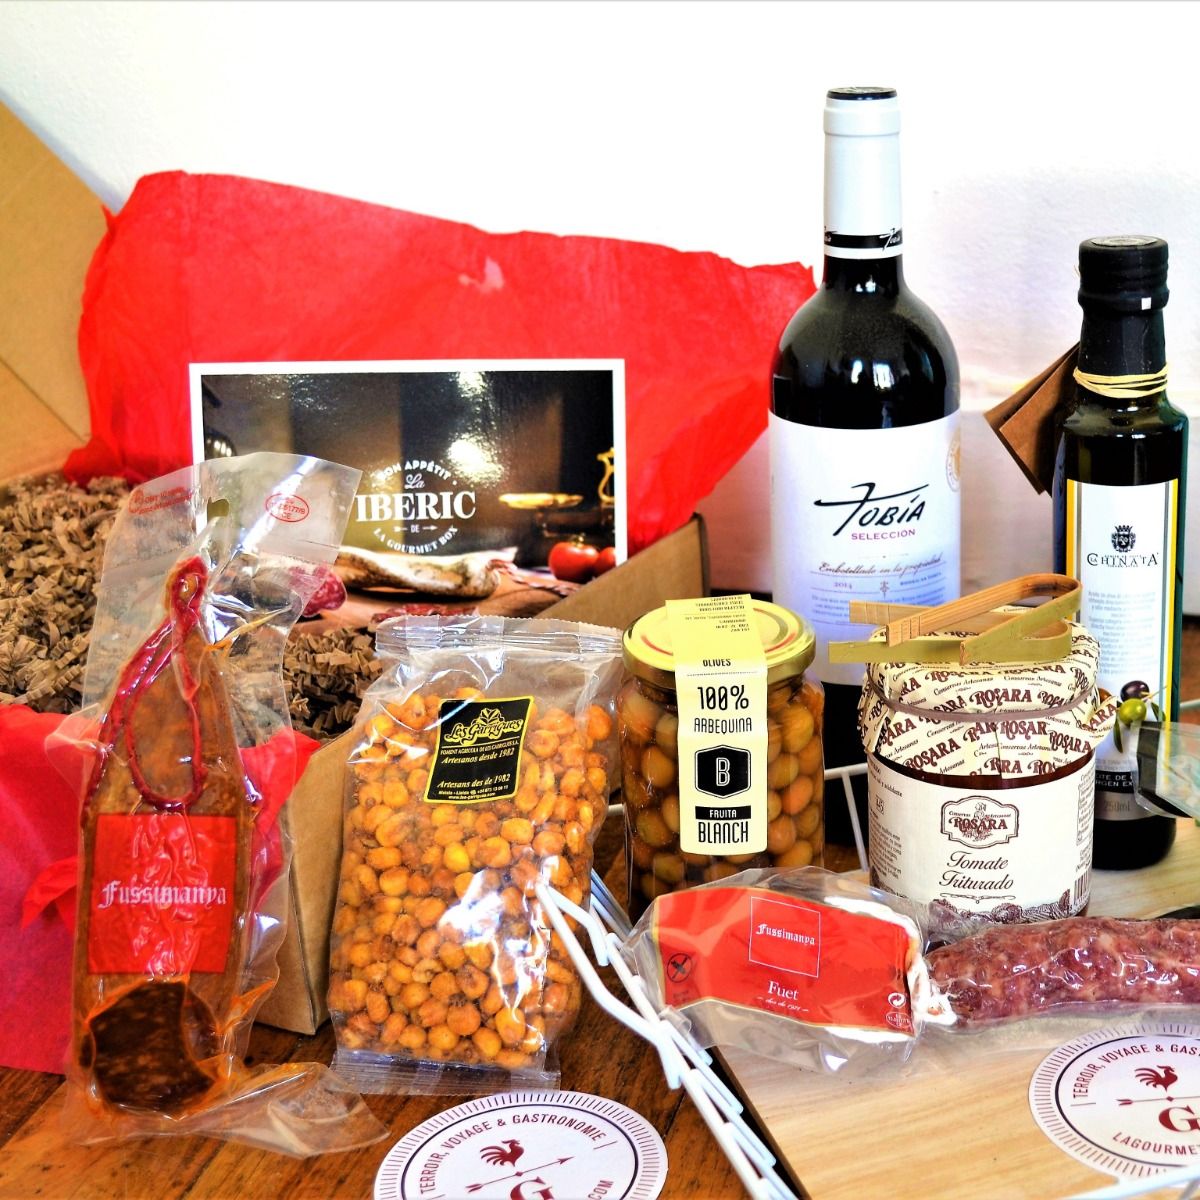 L'Exquis” Gourmet Gift Box by Ducs de Gascogne - Ducs de gascogne